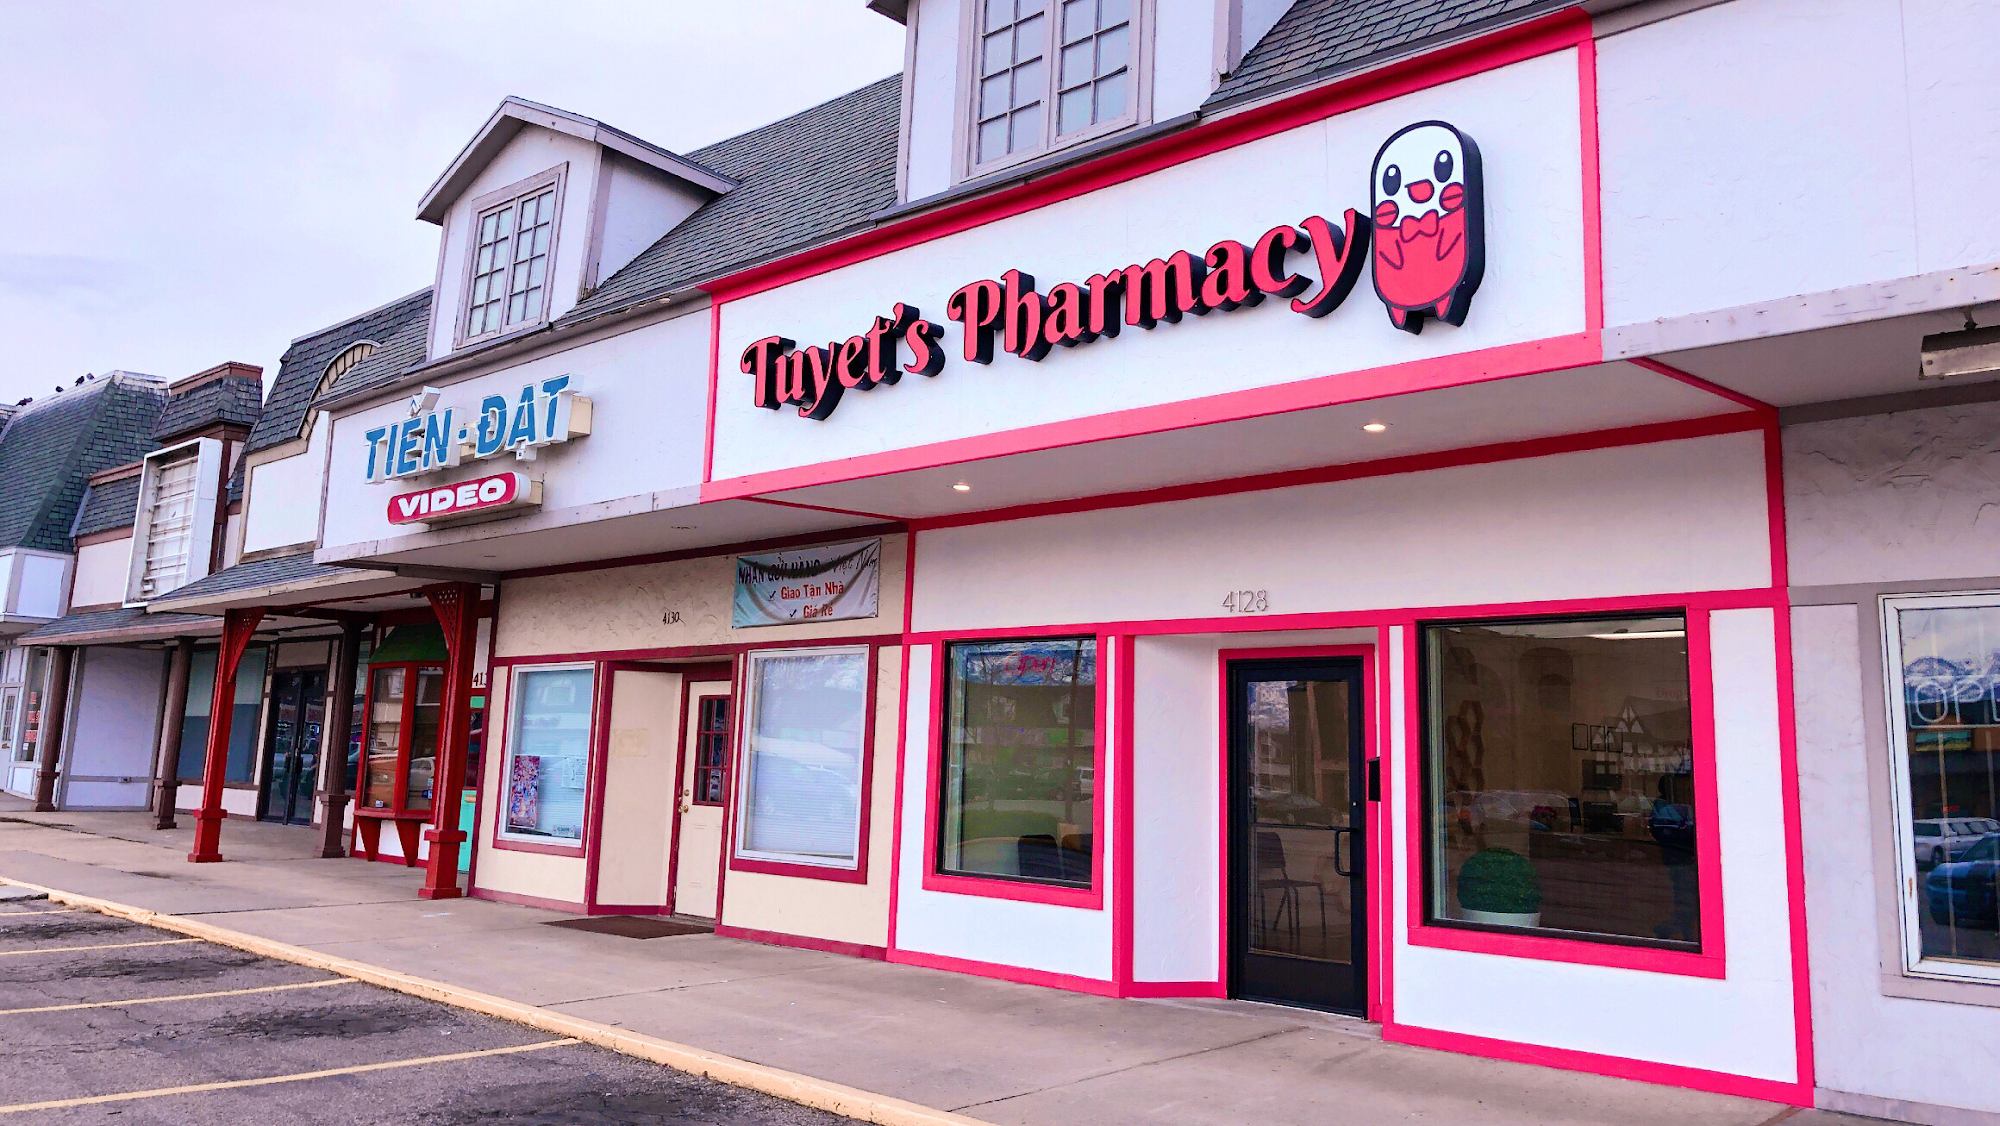 Tuyet's Pharmacy